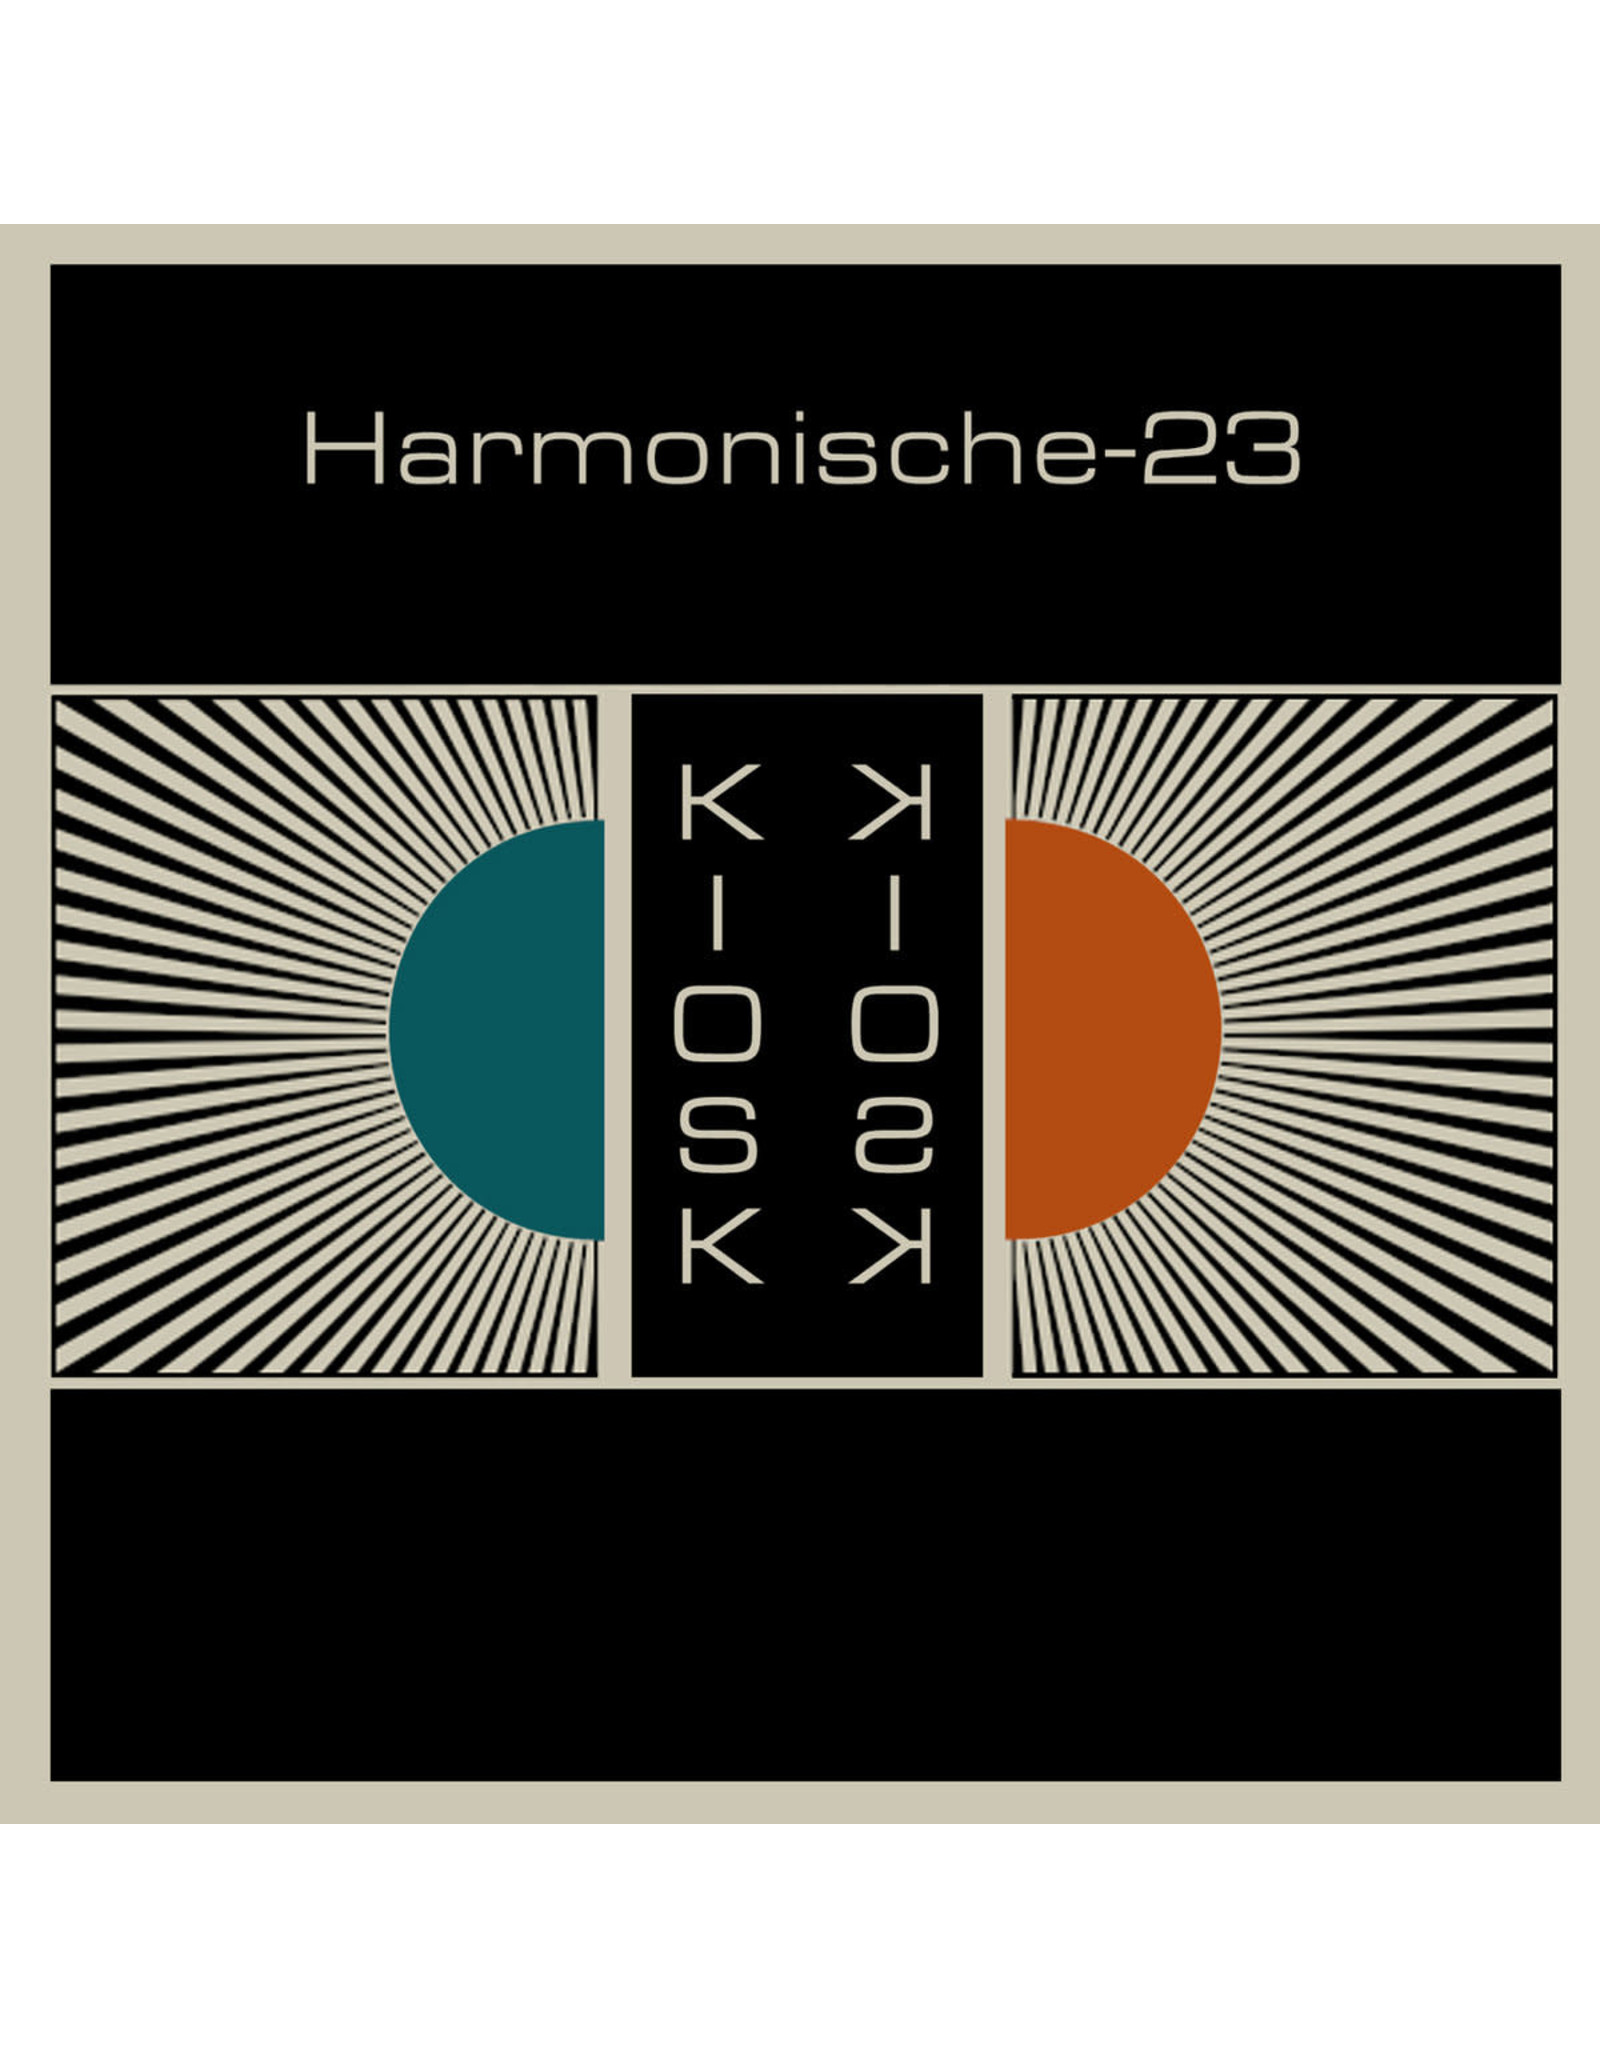 Harmonische-23 - Kiosk CD